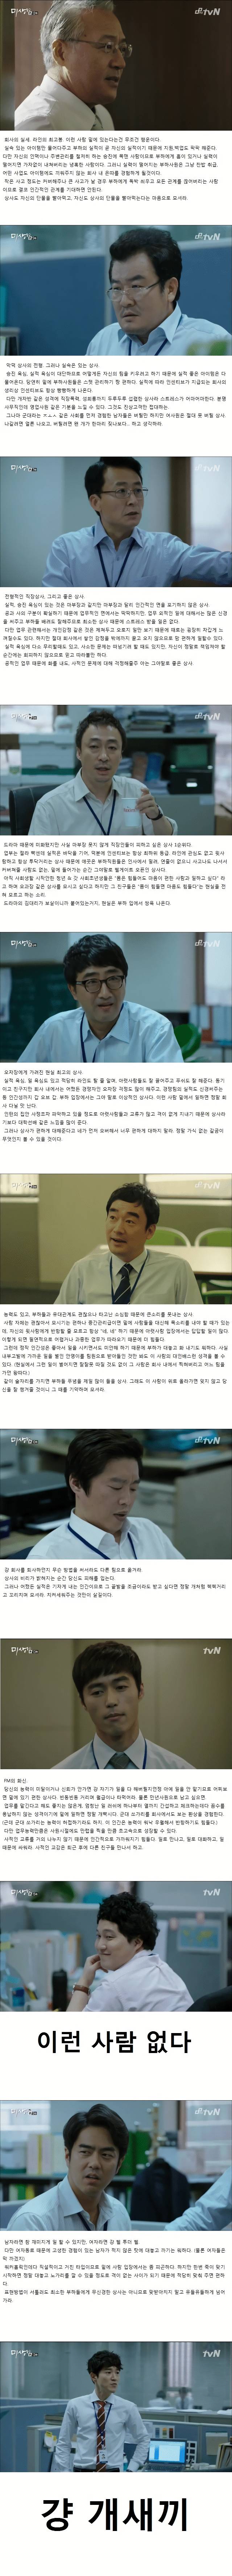 드라마 미생 상사들의 현실 속 모습.JPG | 인스티즈